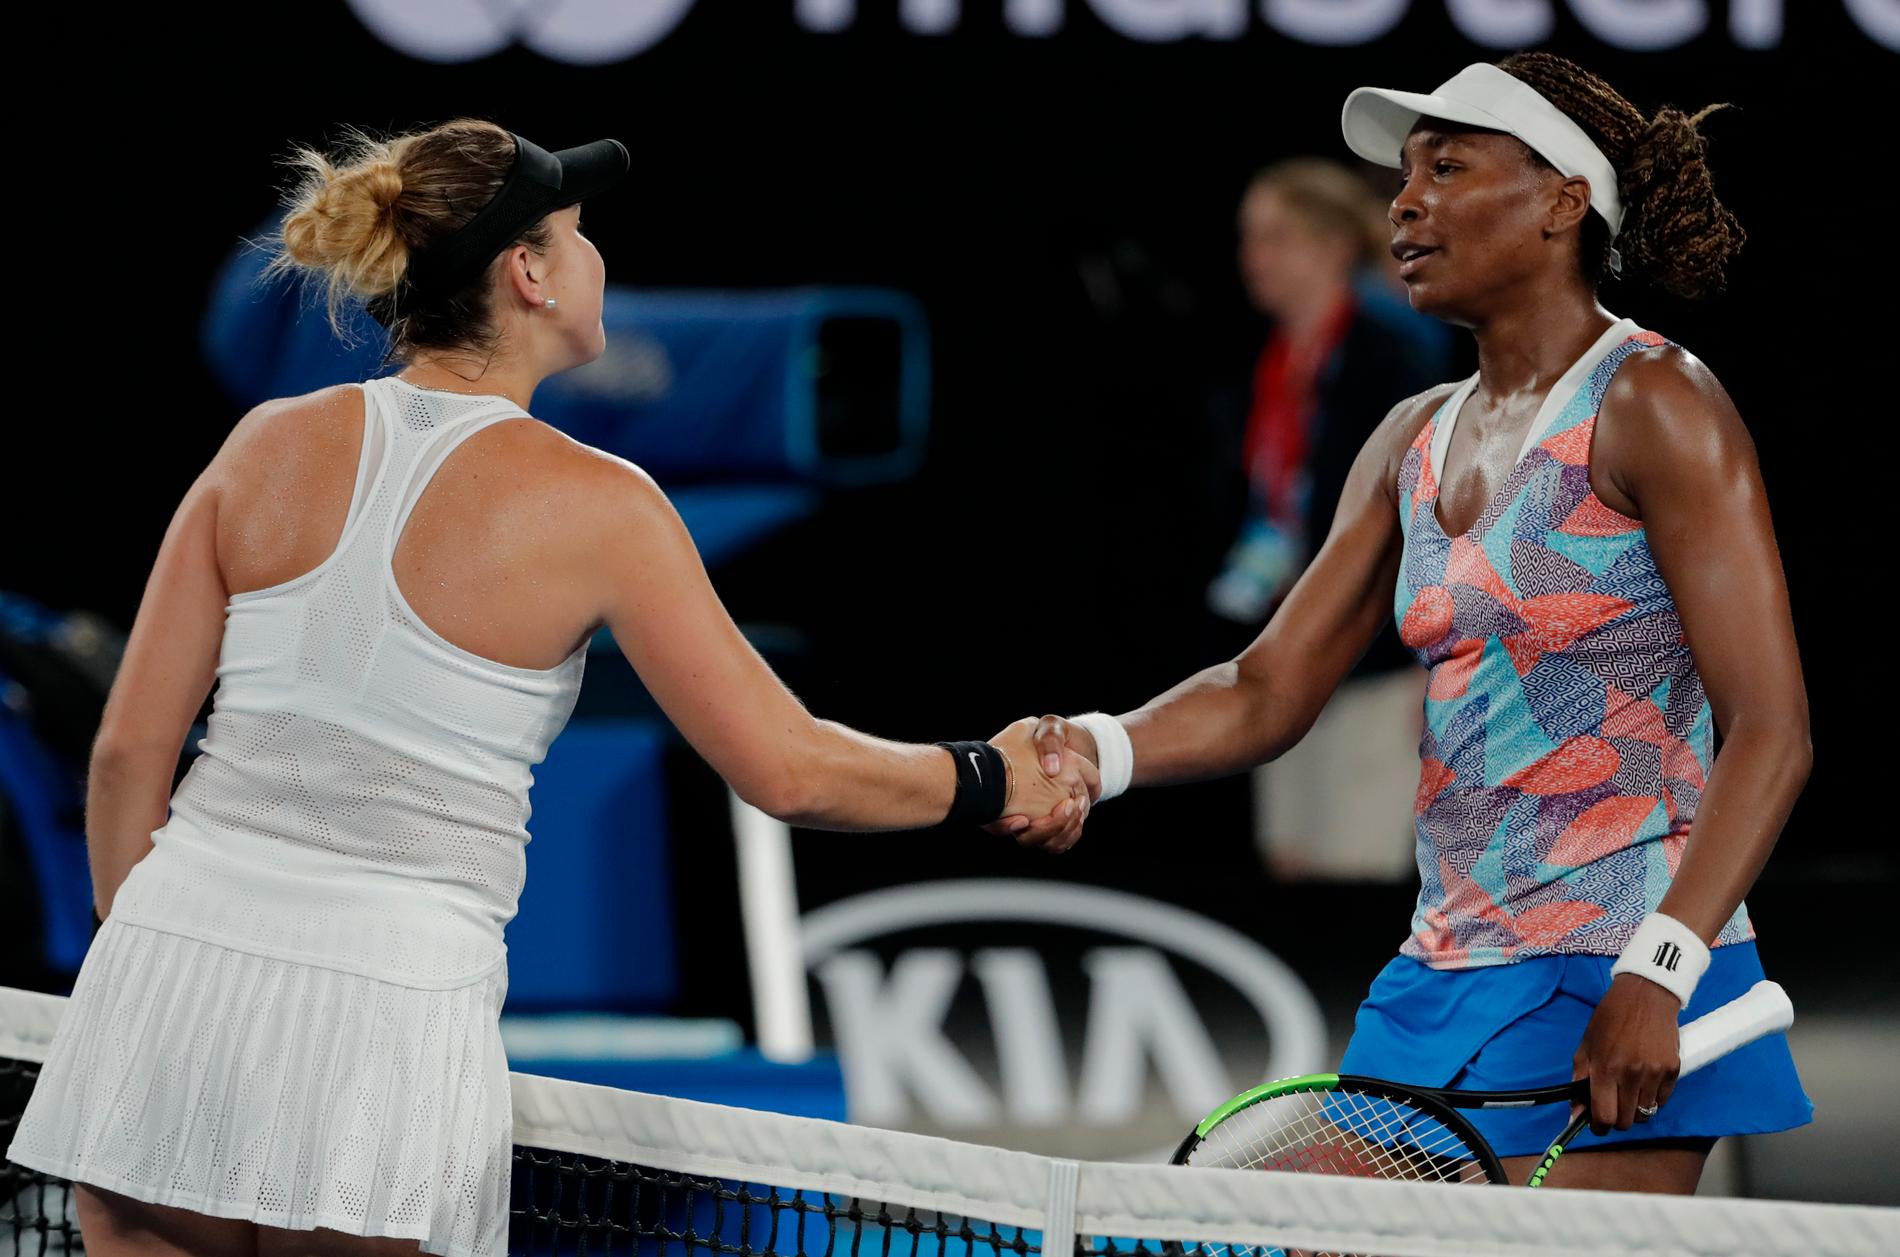 Schweiziskan Belinda Bencic, till vänster, slog ut amerikanskan Venus Williams i den första omgången av Australian Open.